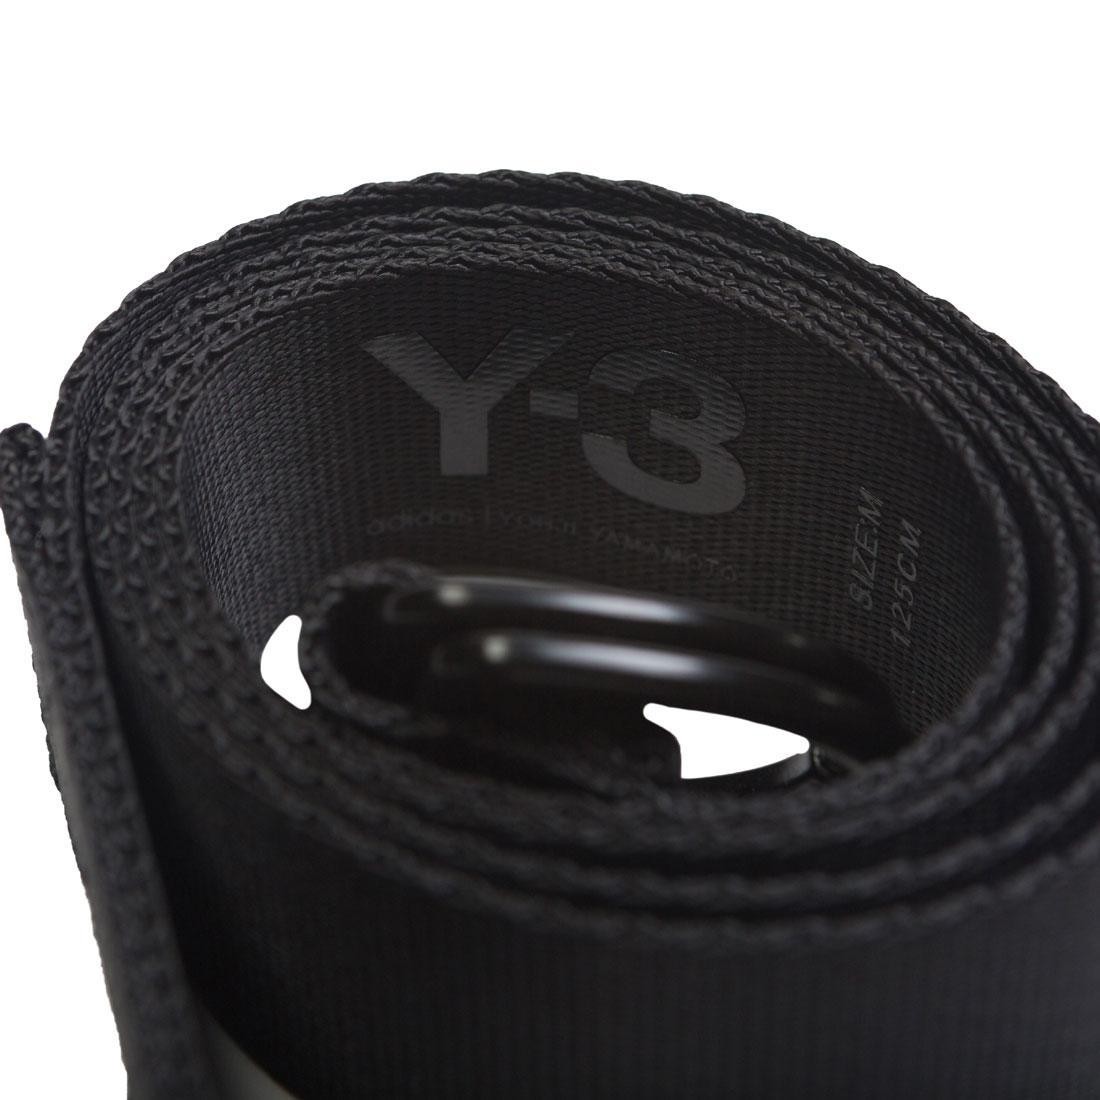 Adidas Y-3 Y3 Street Belt black